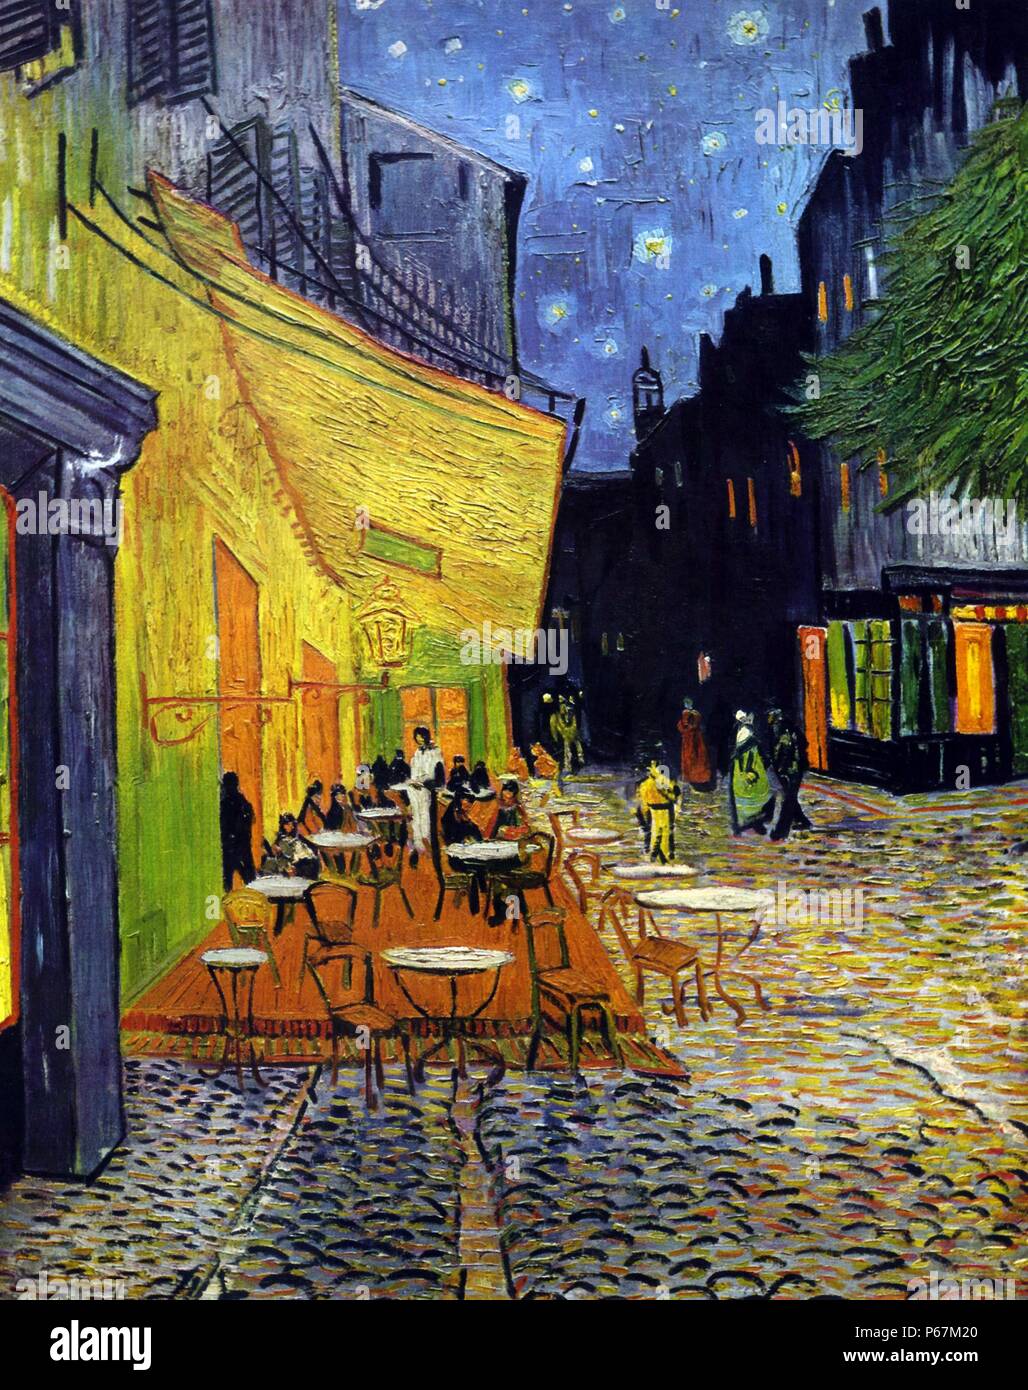 Pittura intitolato 'Cafe Terrazza di Notte' di Vincent van Gogh (1853-1890) post-pittore impressionista di origine olandese. Del 1888 Foto Stock